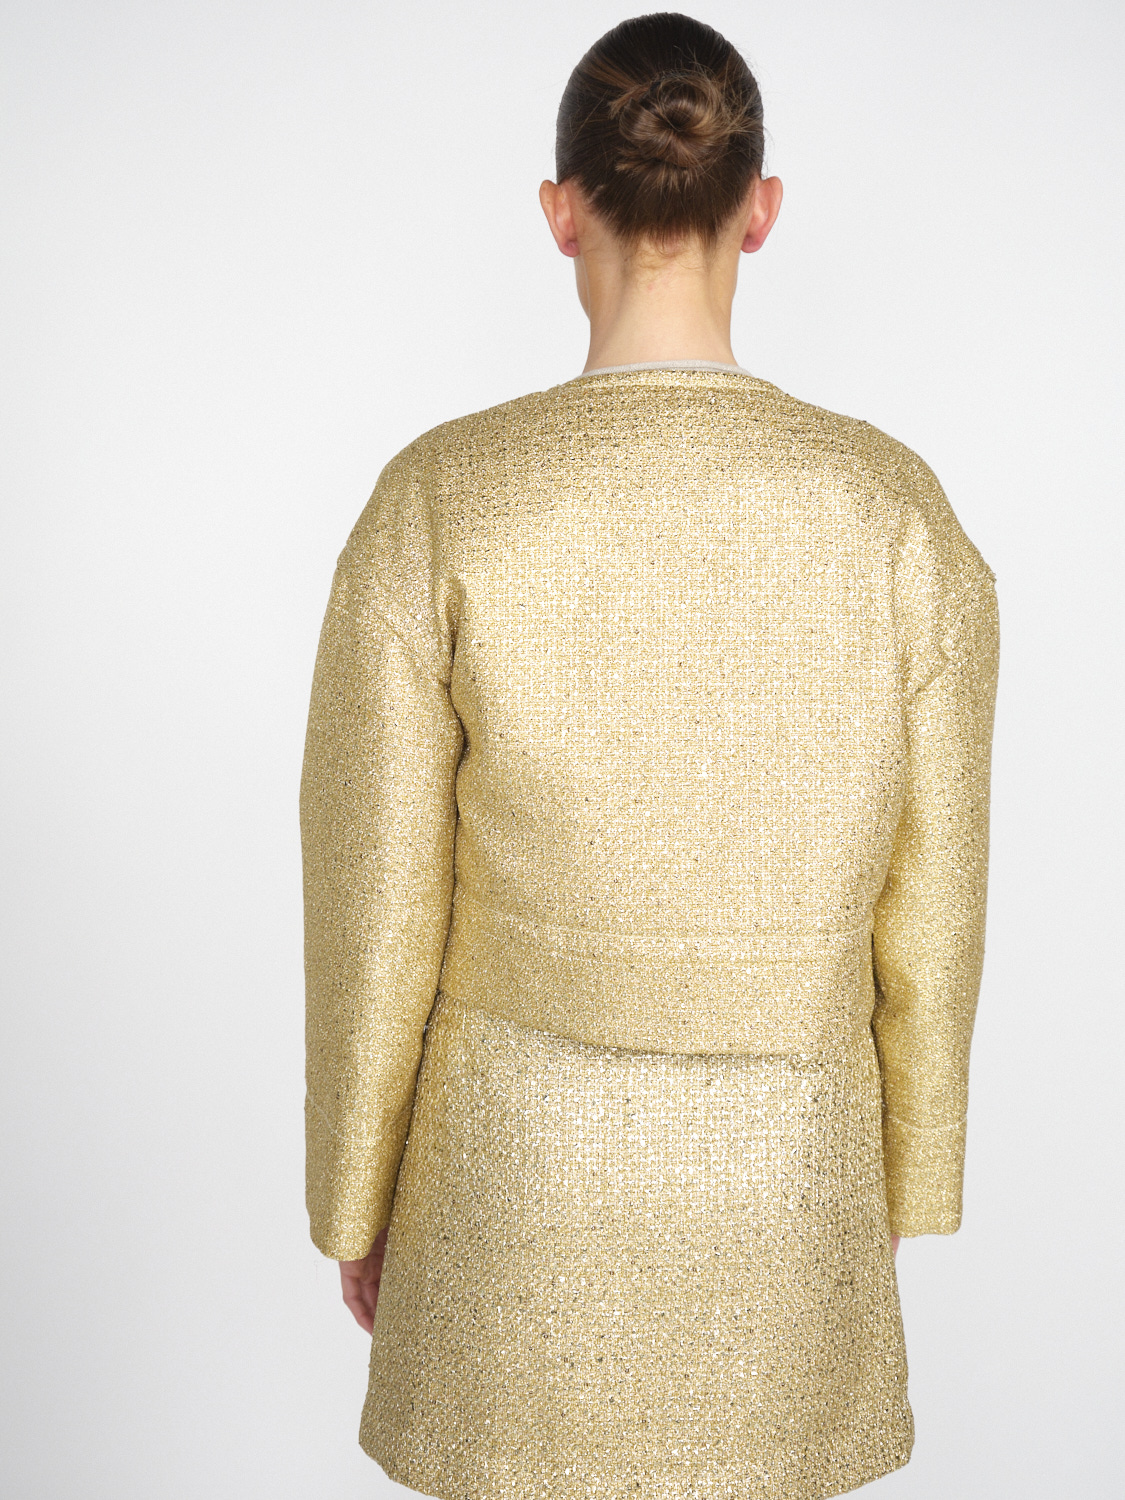 Odeeh Gold Brocade - Brocade blazer with lurex details  gold 36